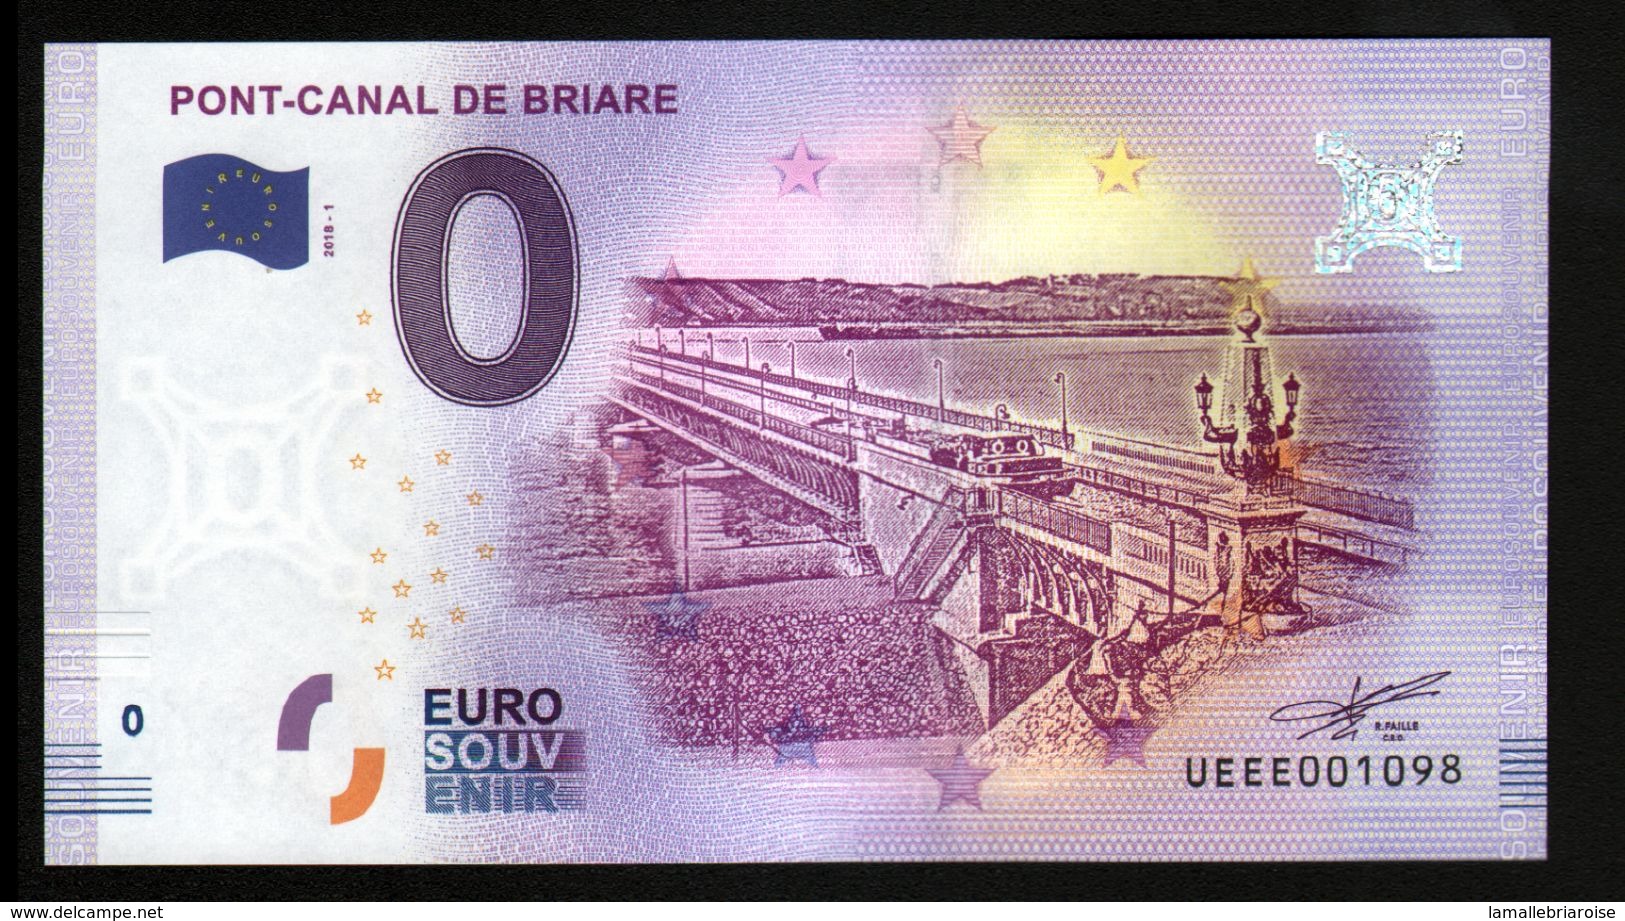 France - Billet Touristique 0 Euro 2018 N°1098 (UEEE001098/5000) - PONT-CANAL DE BRIARE - Essais Privés / Non-officiels